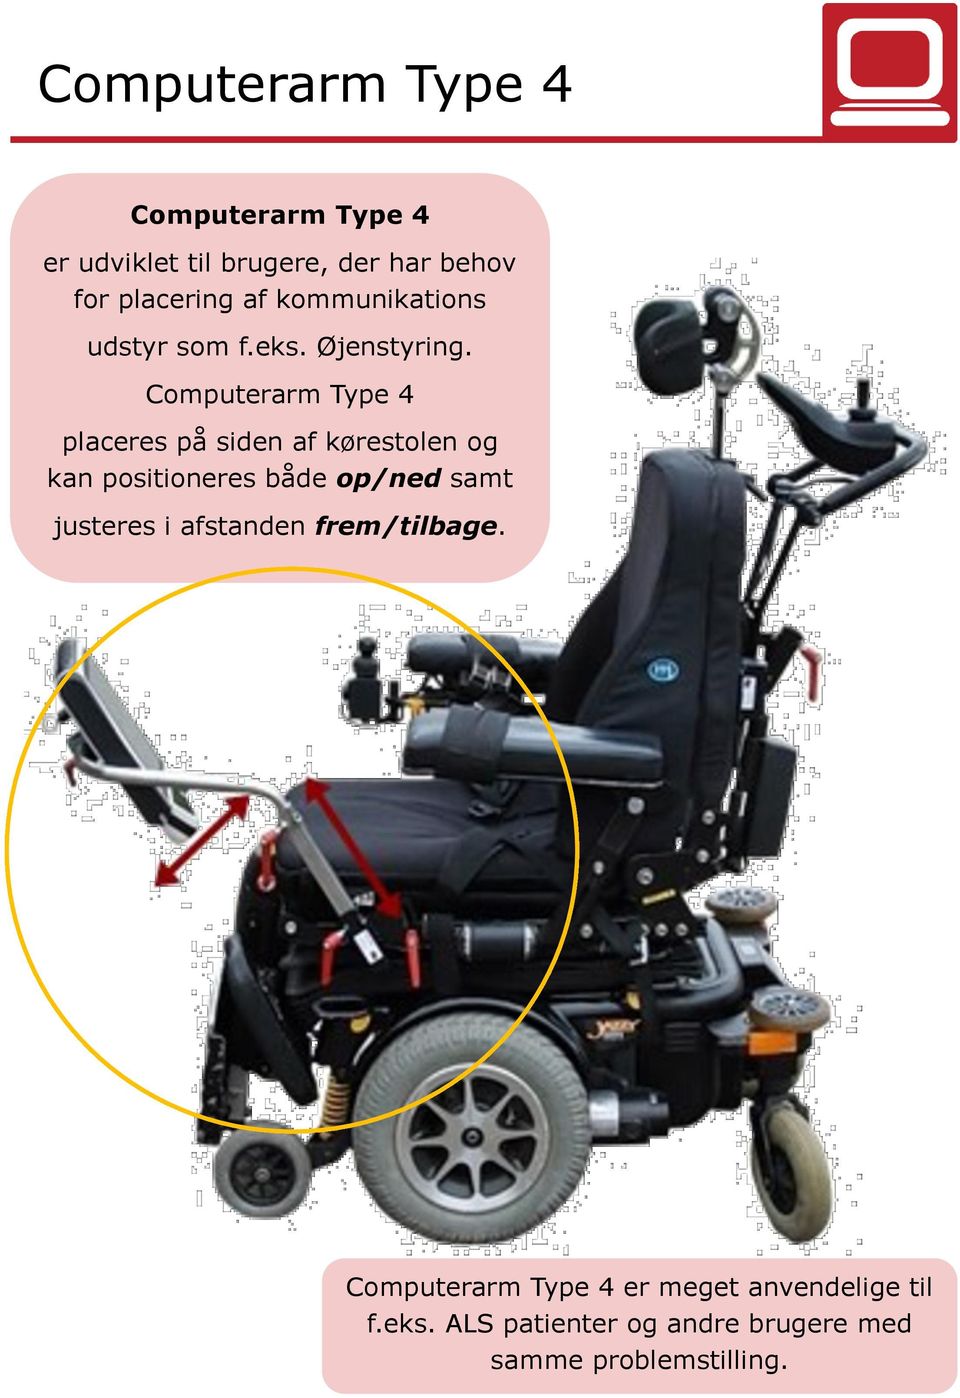 Computerarm Type 4 placeres på siden af kørestolen og kan positioneres både op/ned samt